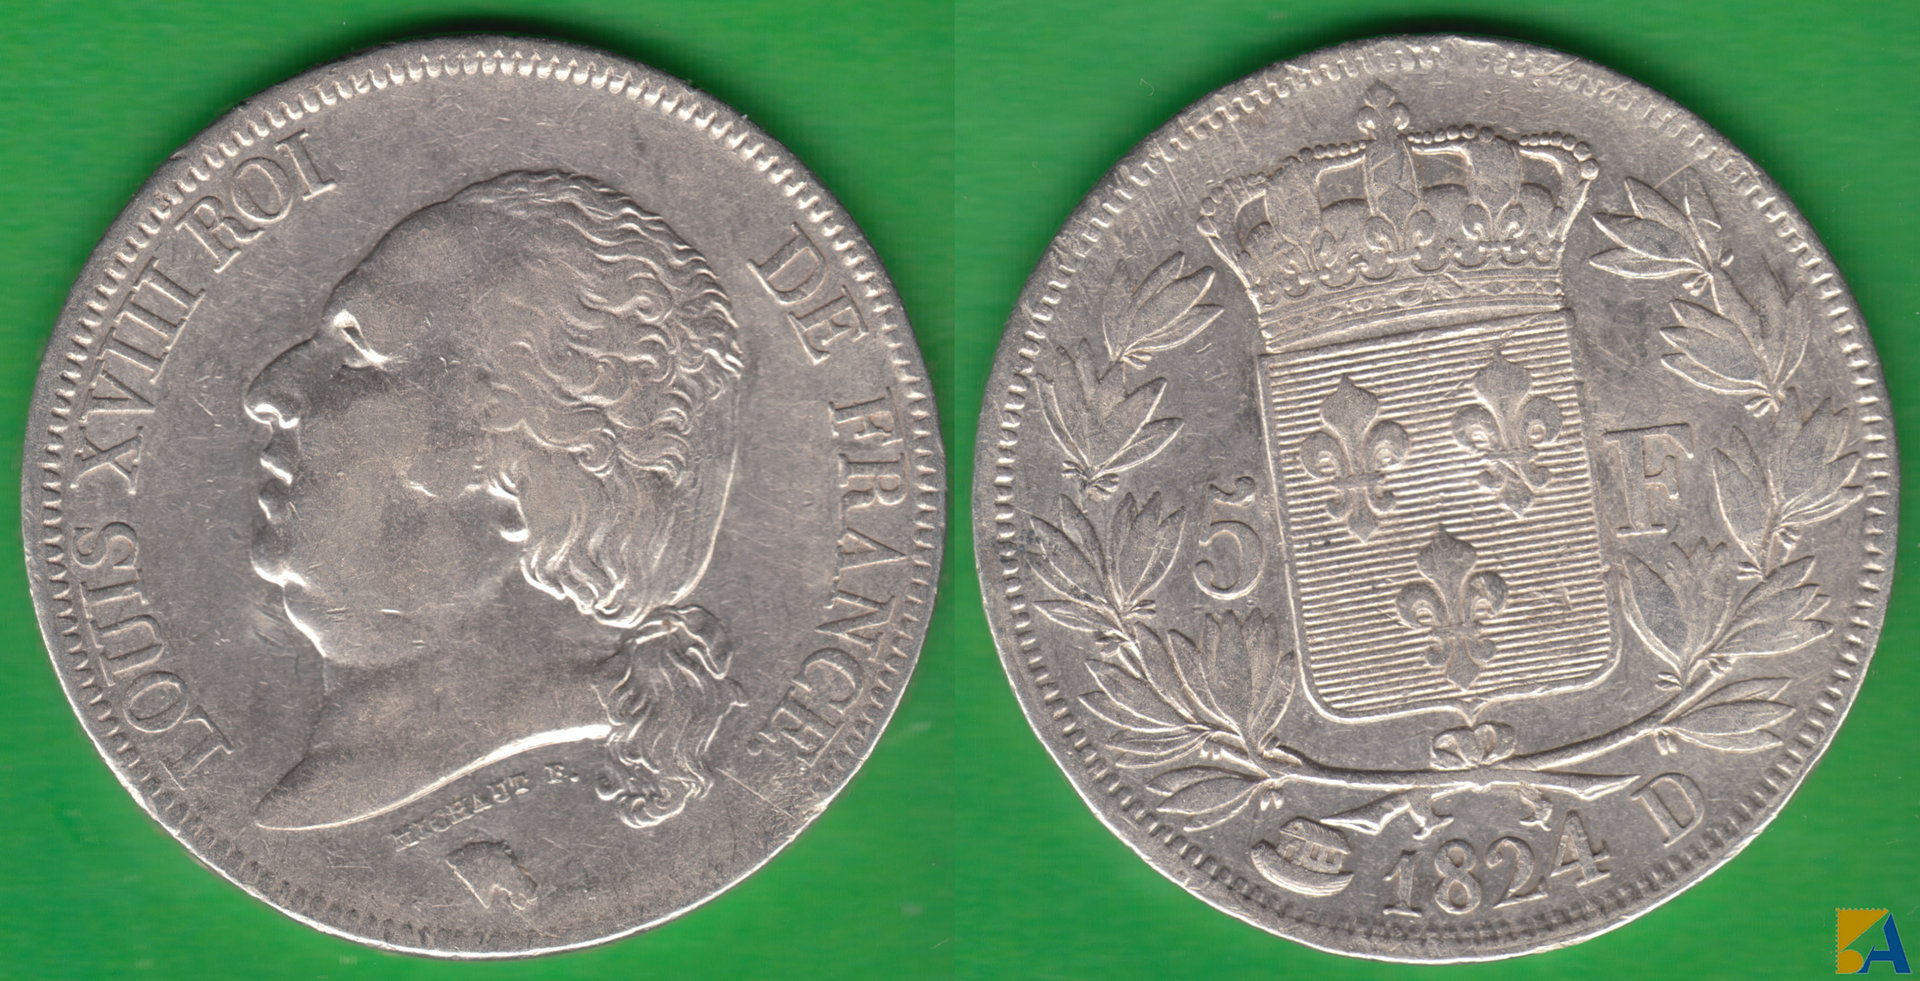 FRANCIA - FRANCE. 5 FRANCOS (FRANCS) DE 1824 D. LYON. PLATA 0.900.